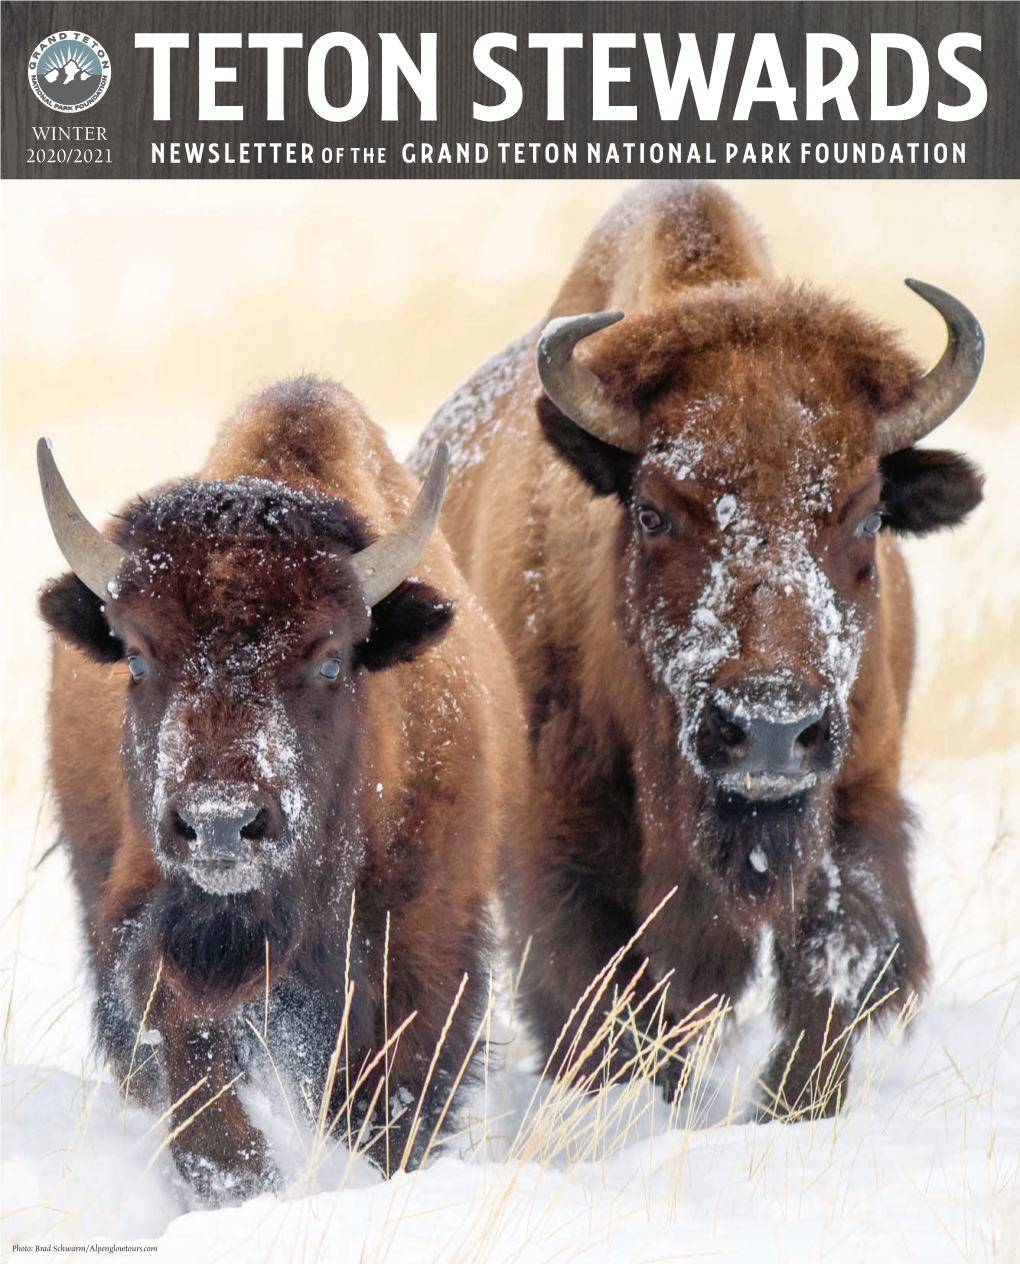 Newsletter of the Grand Teton National Park